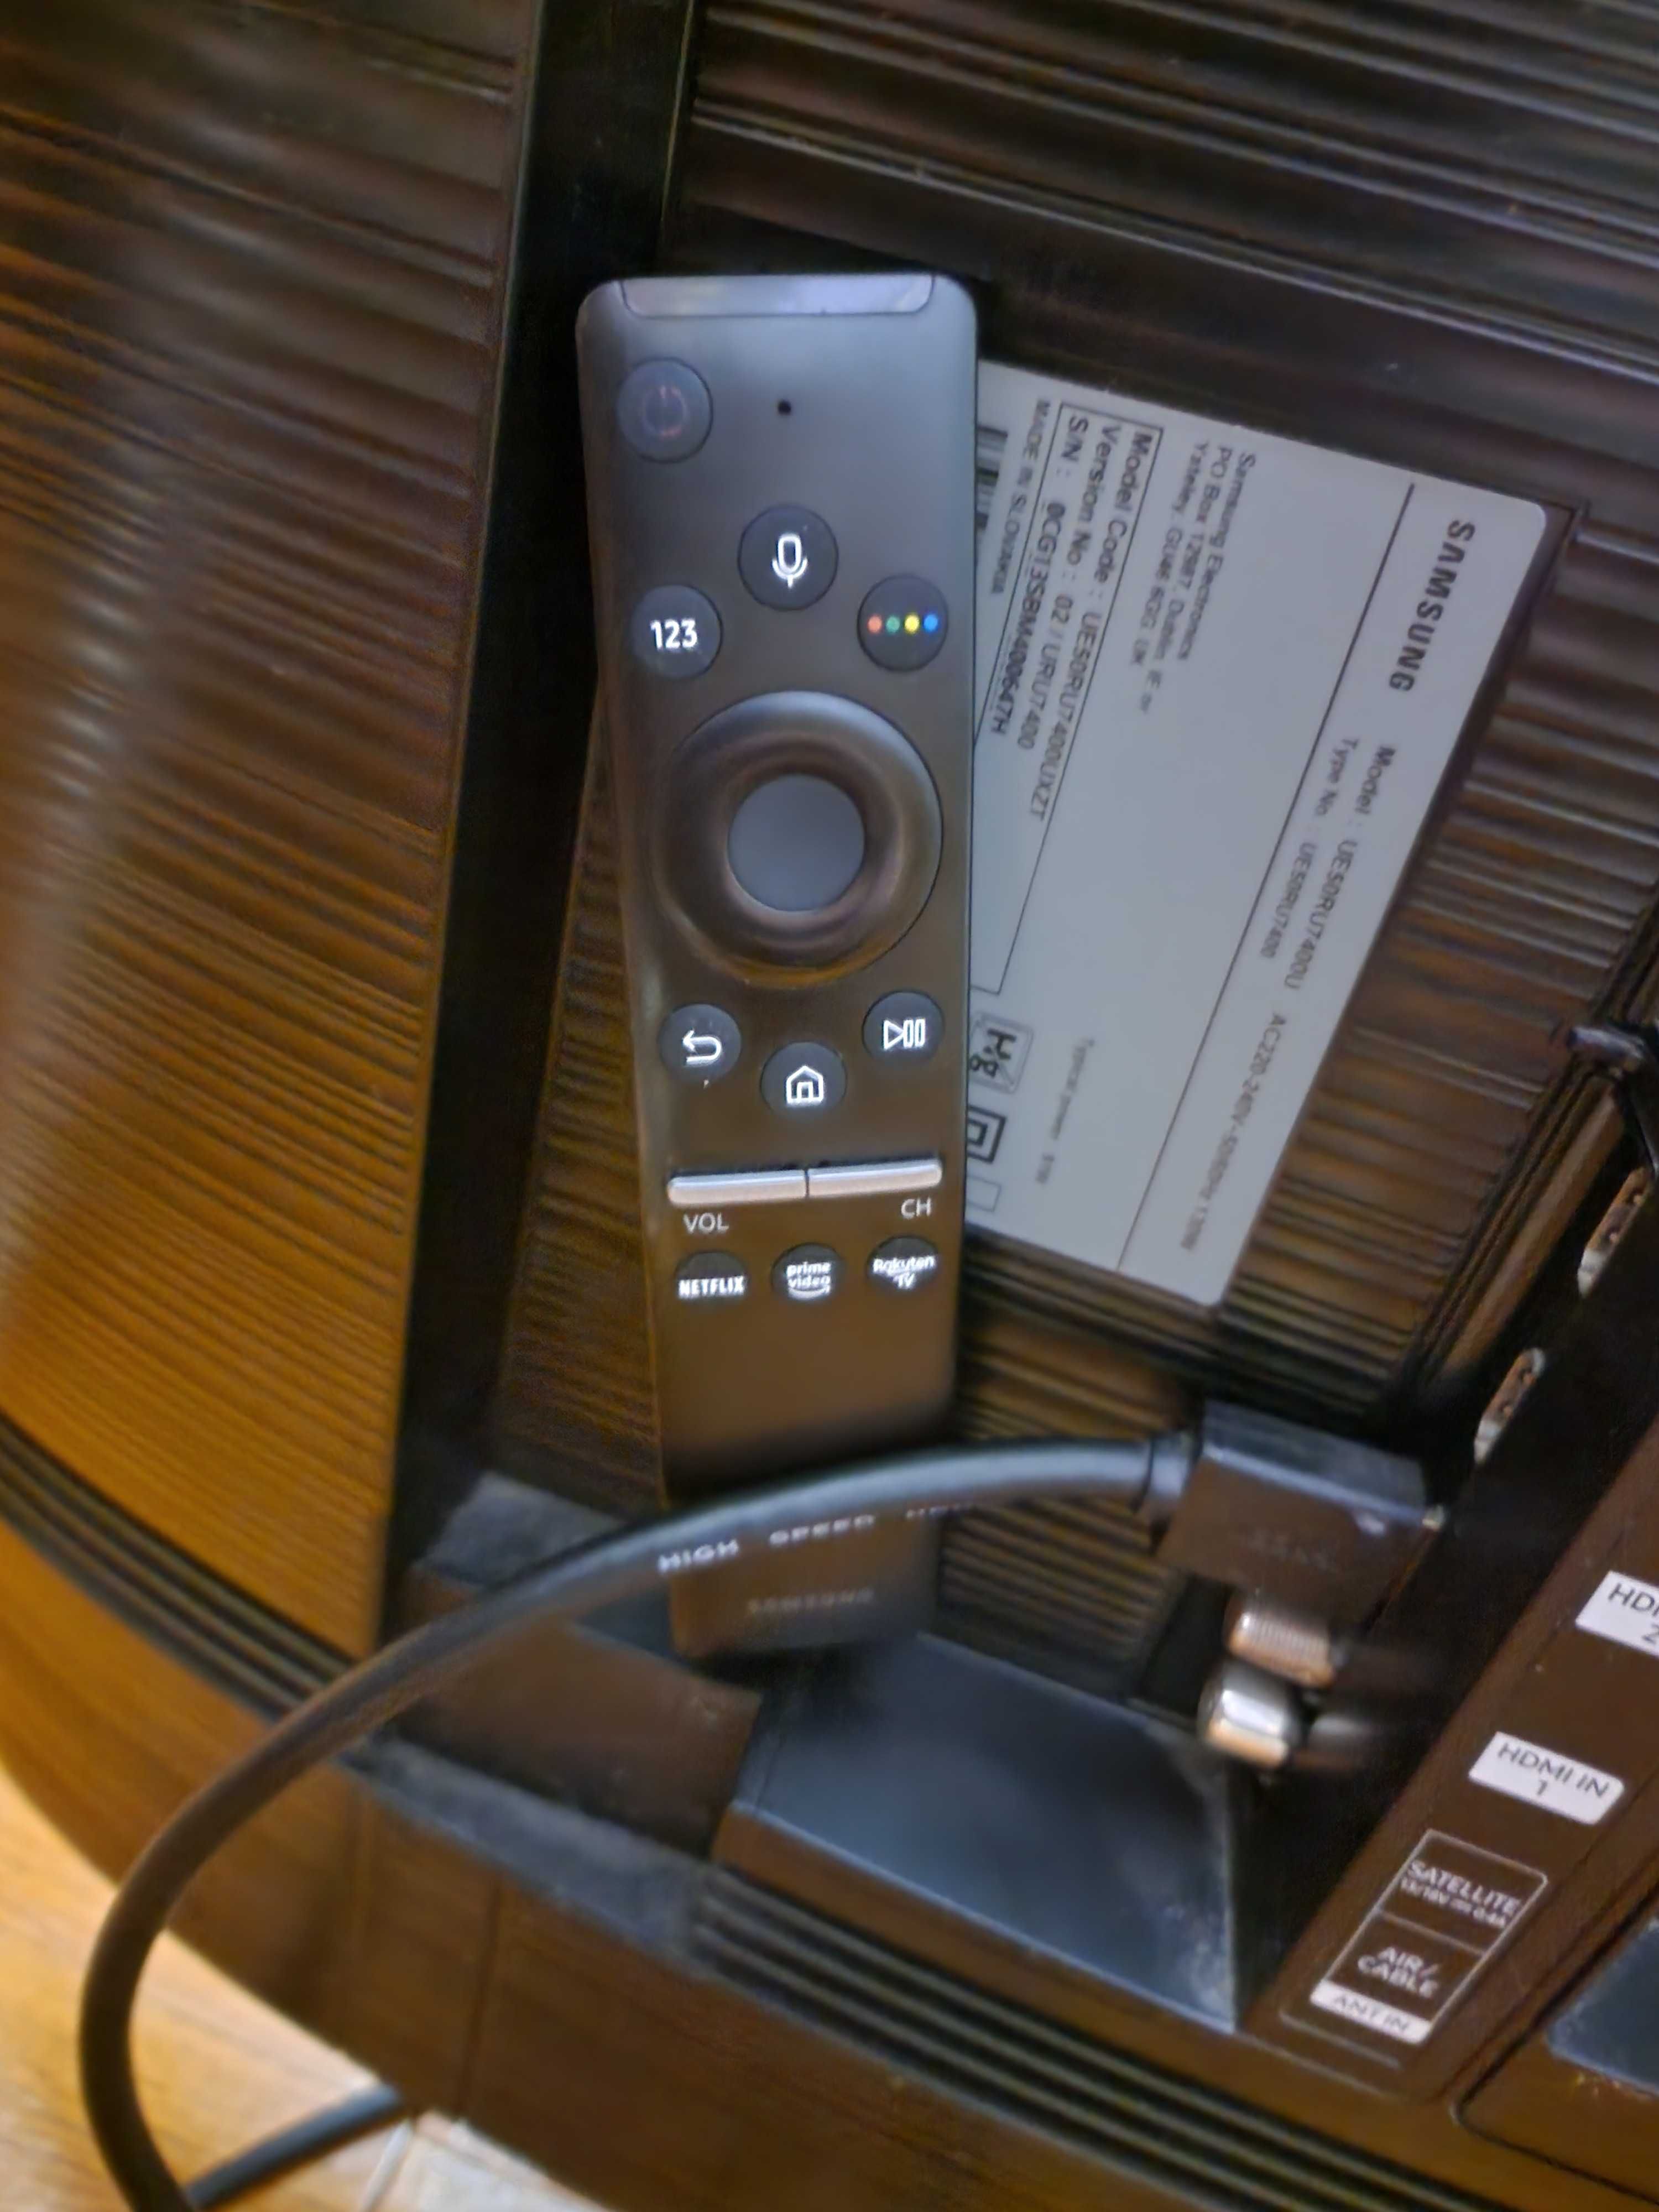 Samsung 50 smart tv 4K hdr 3840×2160  пікс 60 гц голосовий ввід